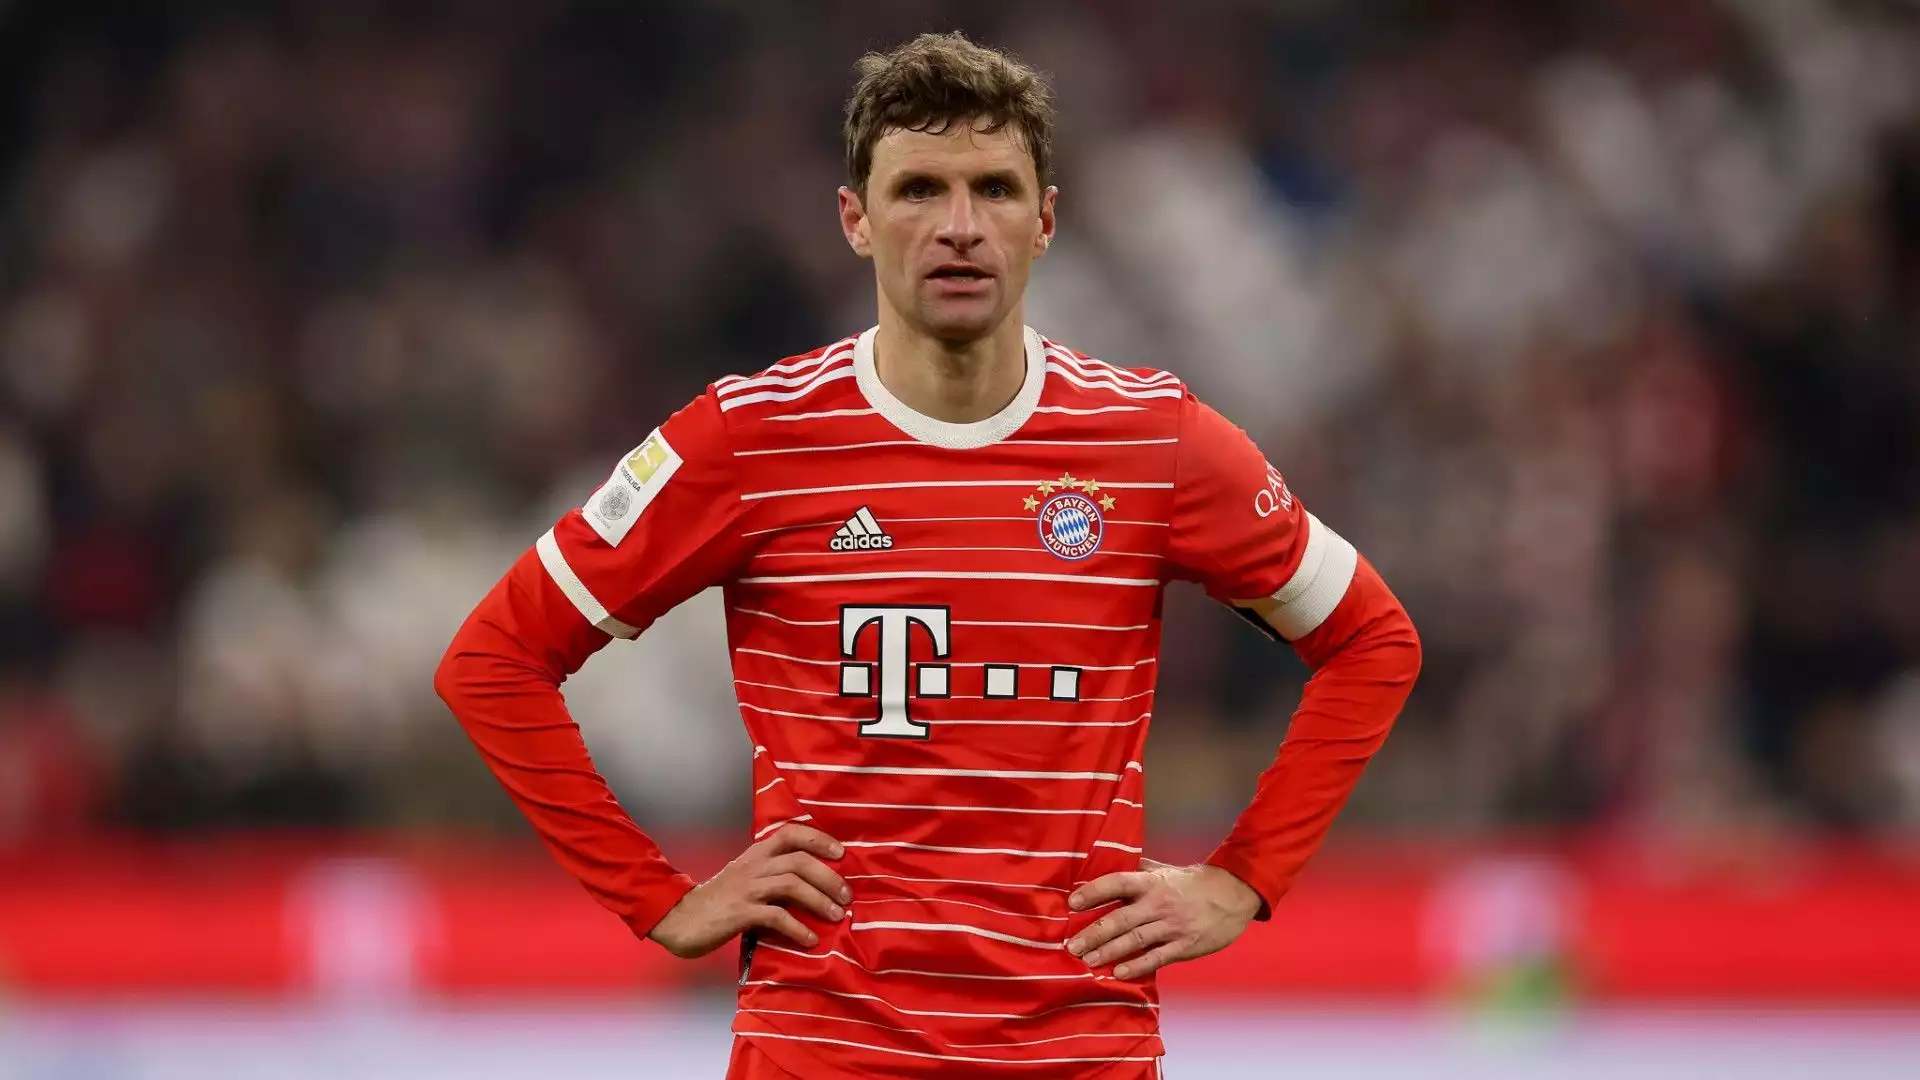 Nella partita contro il Borussia Dortmund dell'1 aprile Muller ha segnato una doppietta